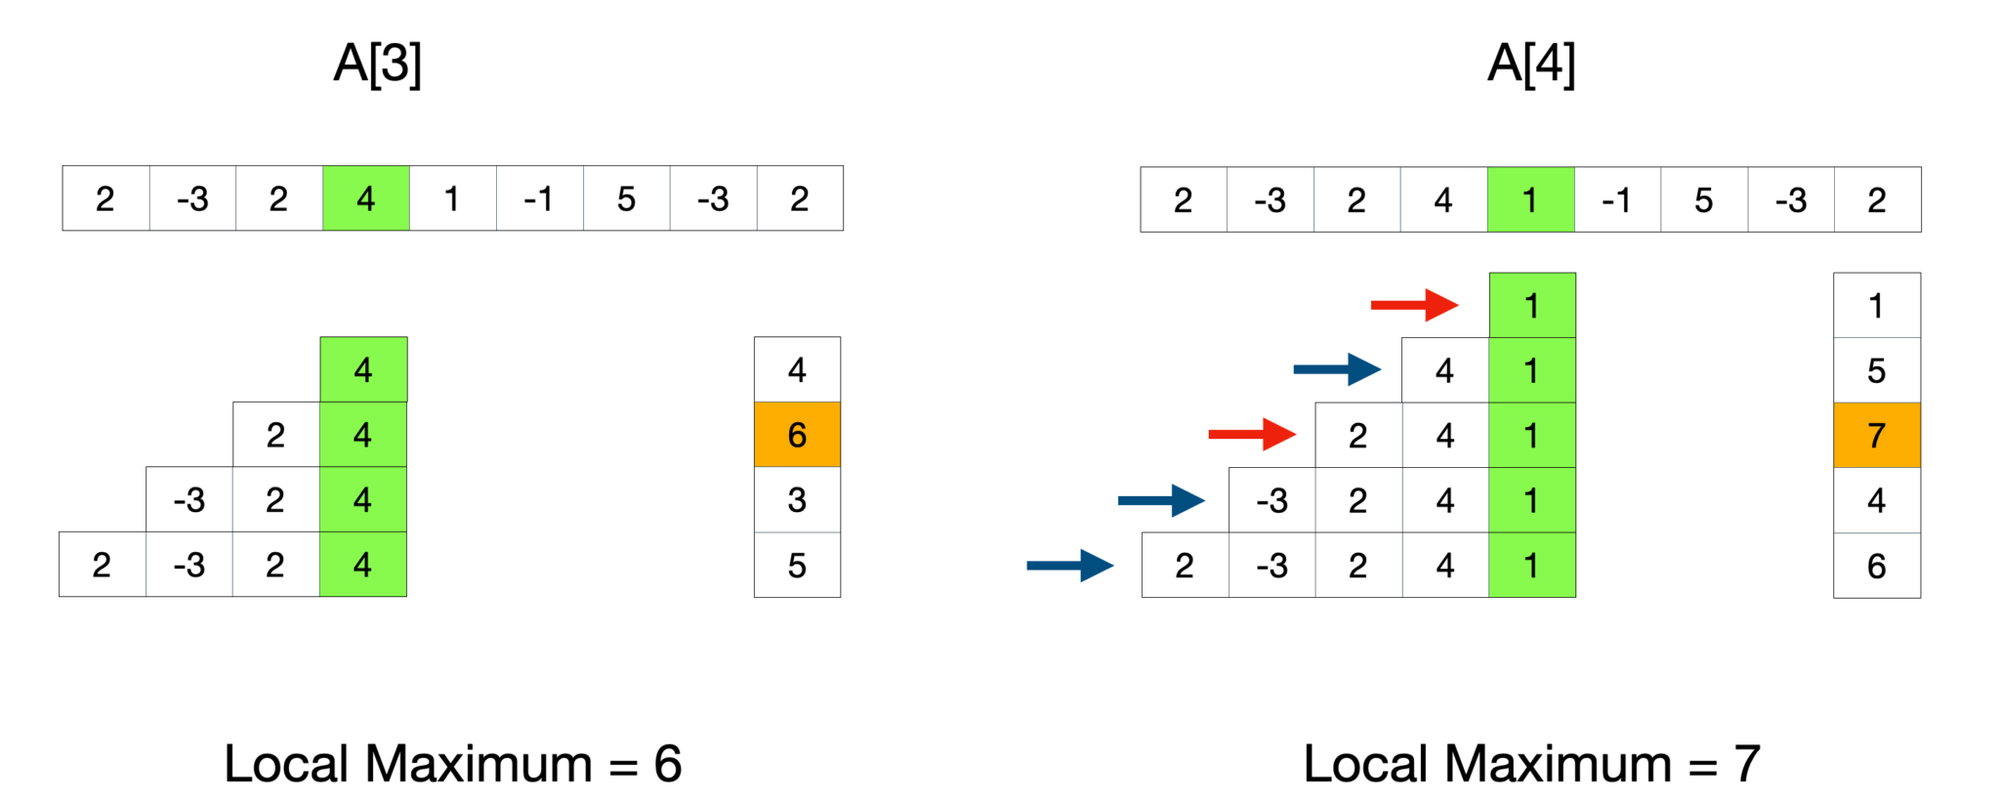 A[4]의 부분합을 계산할때 빨간색 화살표가 가리키는 대상들만 부분합을 구해주면 된다.